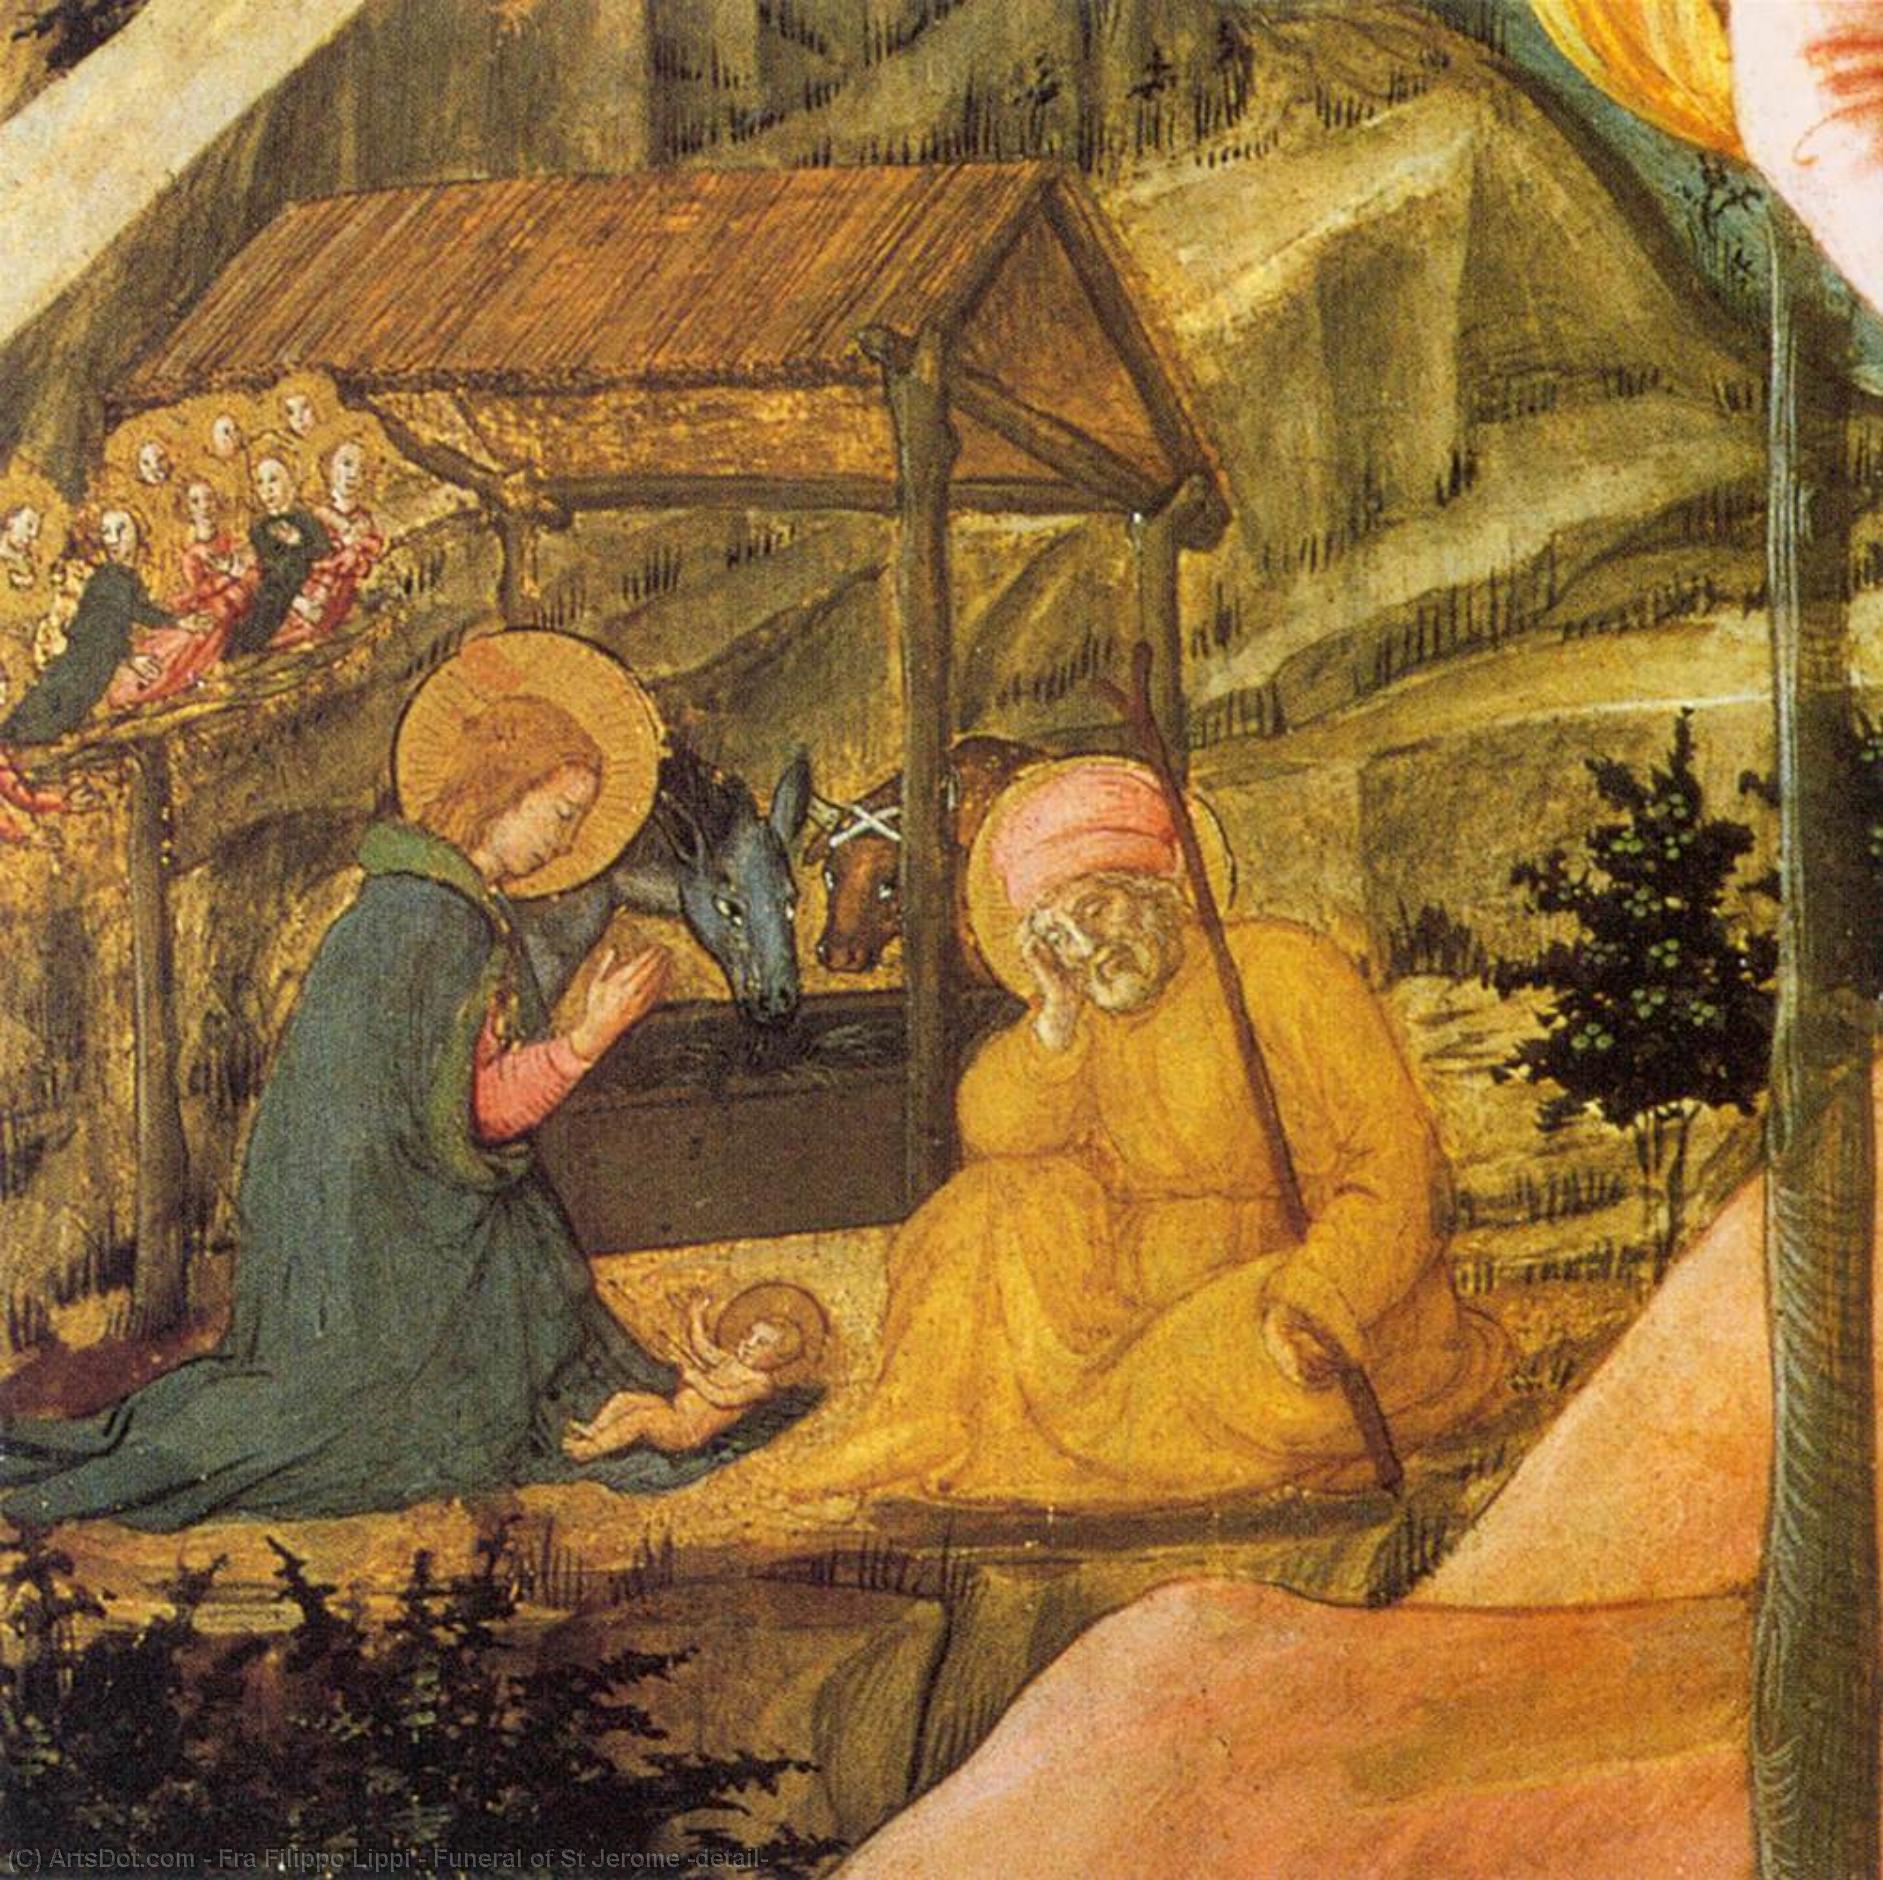 WikiOO.org - Encyclopedia of Fine Arts - Maleri, Artwork Fra Filippo Lippi - Funeral of St Jerome (detail)